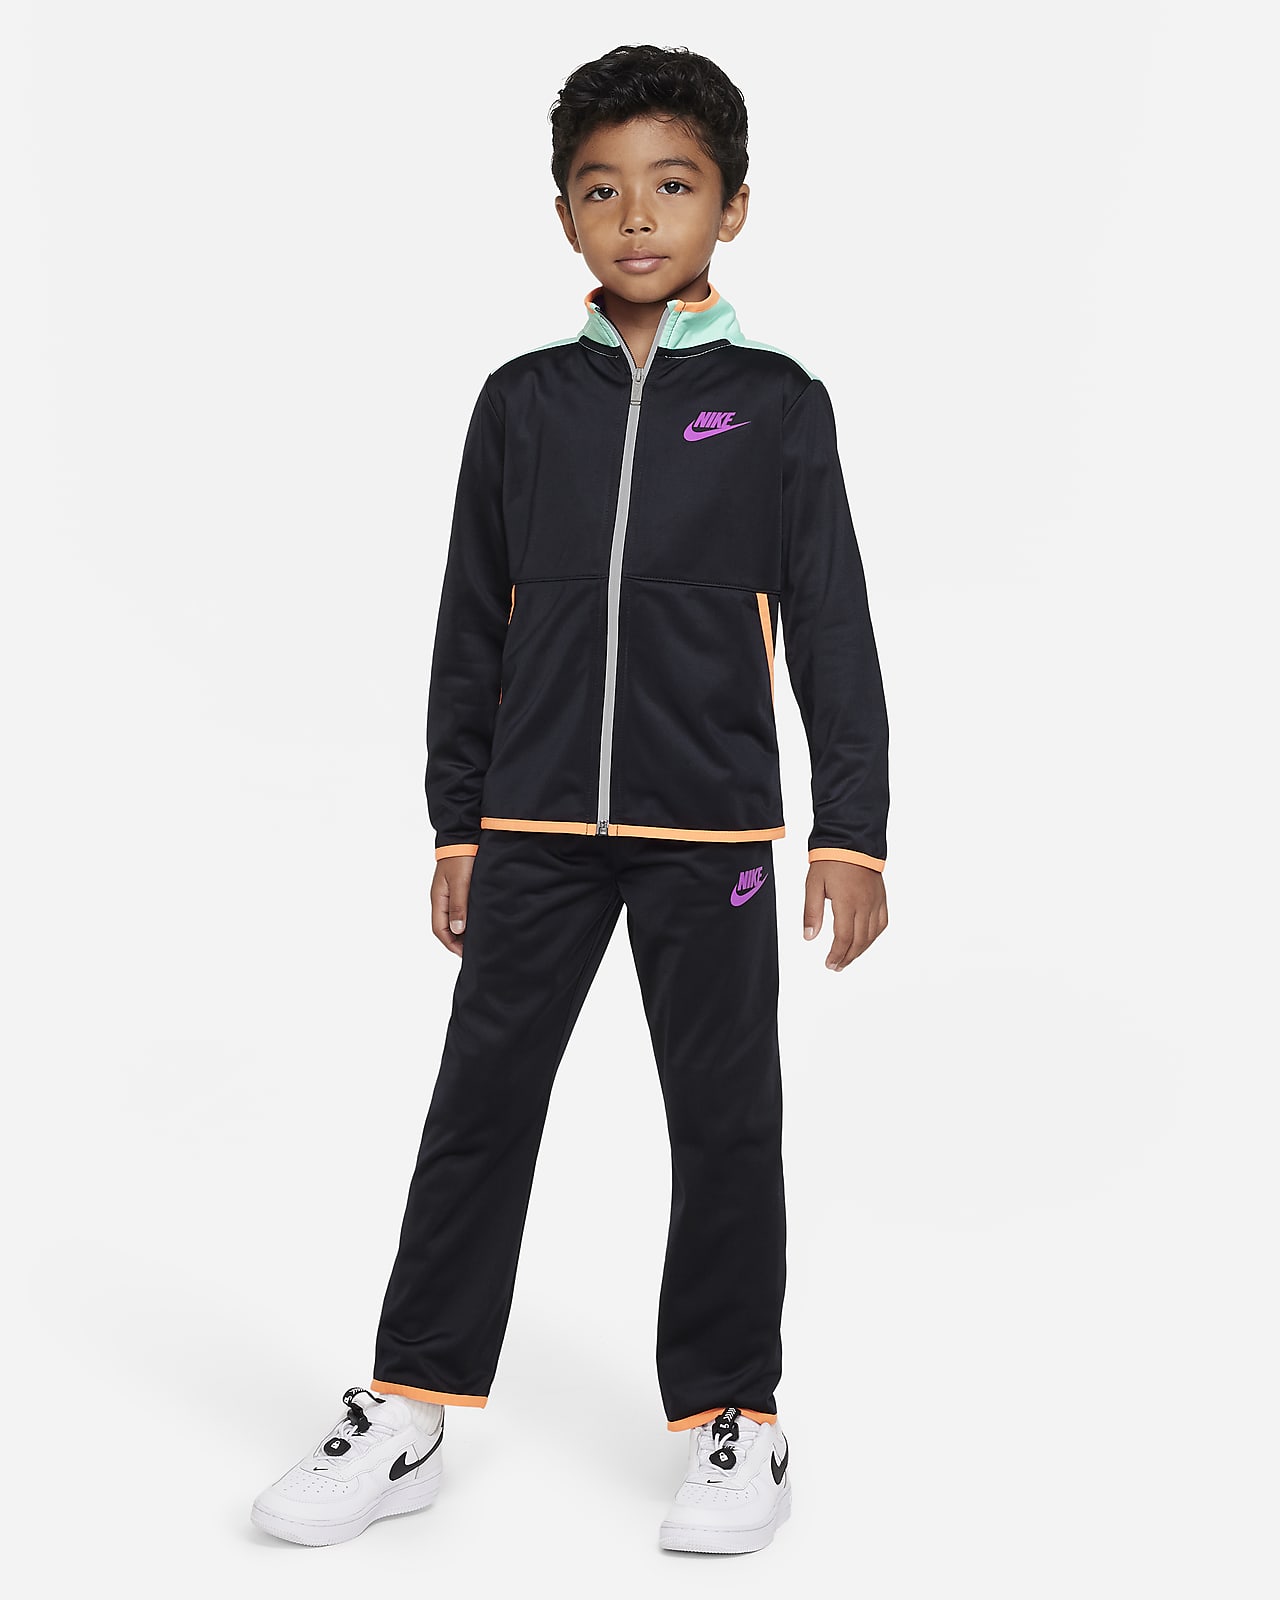 Nike Sportswear Illuminate Tricot Set Chándal Niño/a pequeño/a. ES